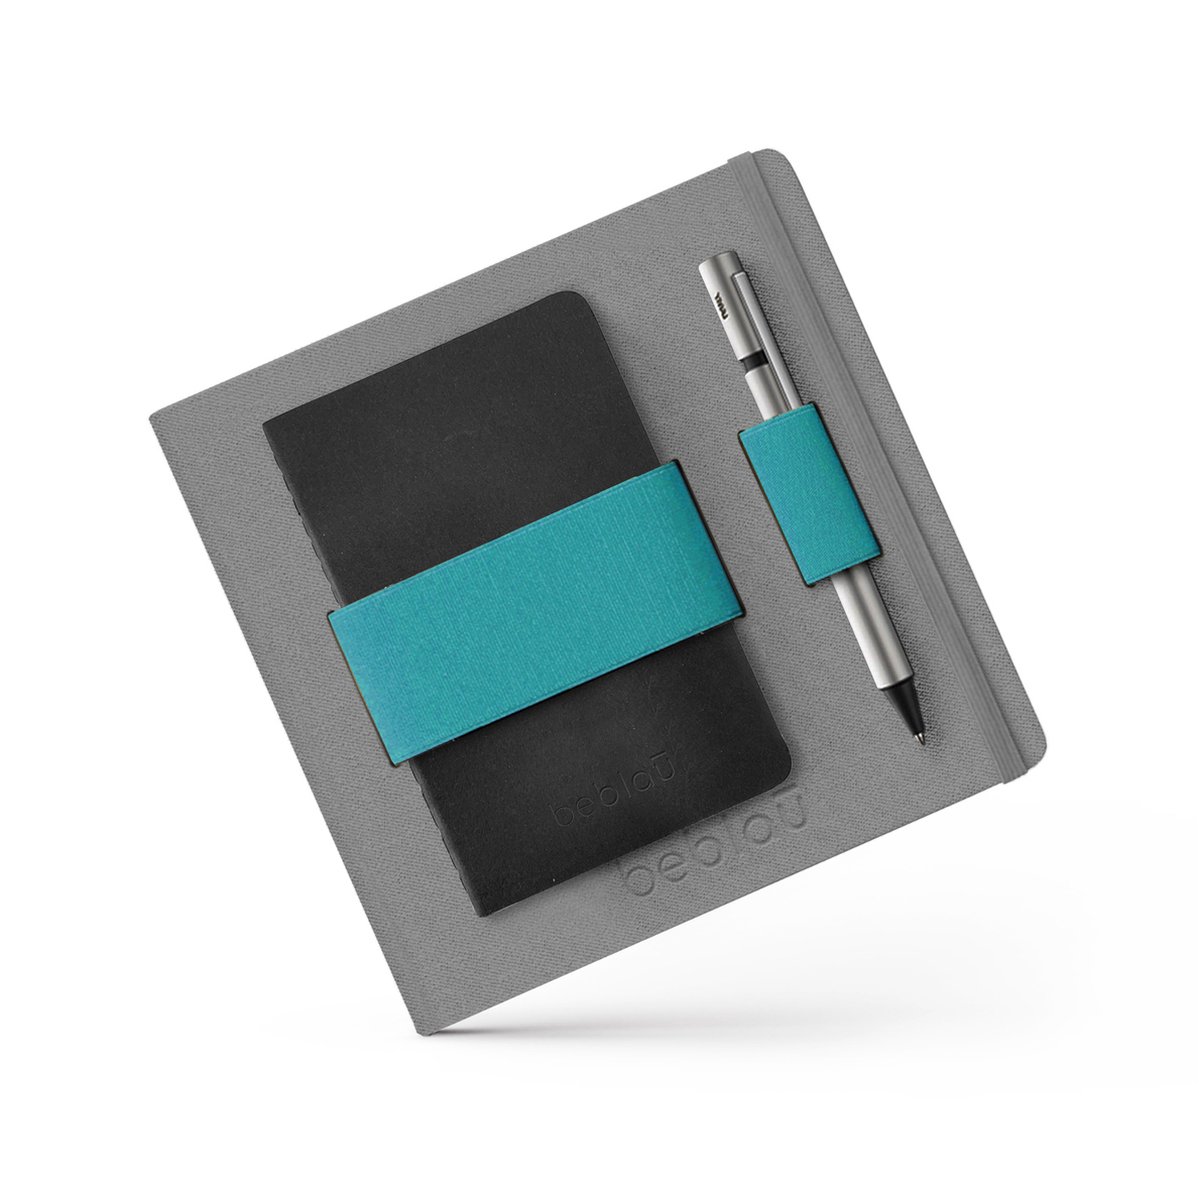 Beblau - FLEX notitieboek *lined* met elastische band/organizer met ruimte voor bijv. pen en telefoon - perfect voor op reis, werken op locatie, vergaderingen, school - GRIJS / TURQUOISE - GELINIEERD - HARDCOVER